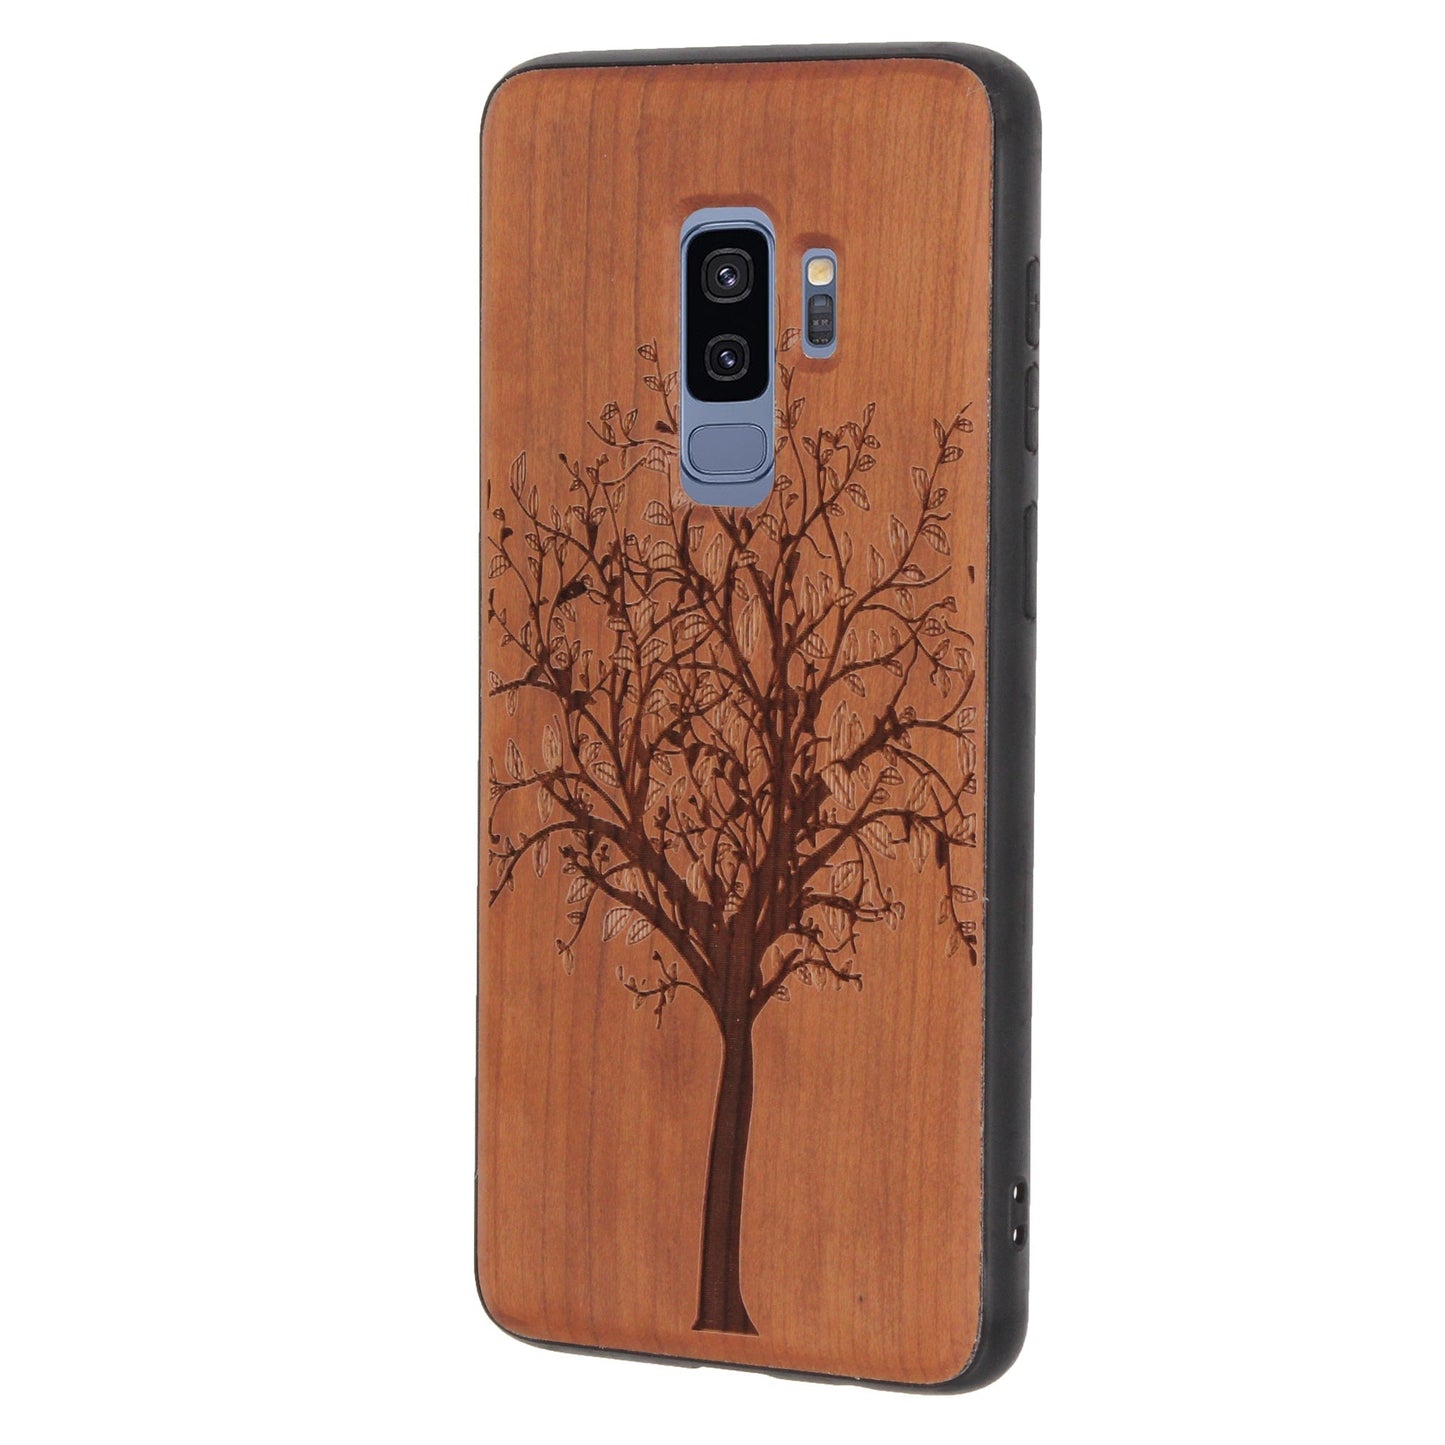 Coque Tree of Life Eden en bois de cerisier pour Samsung Galaxy S9 Plus